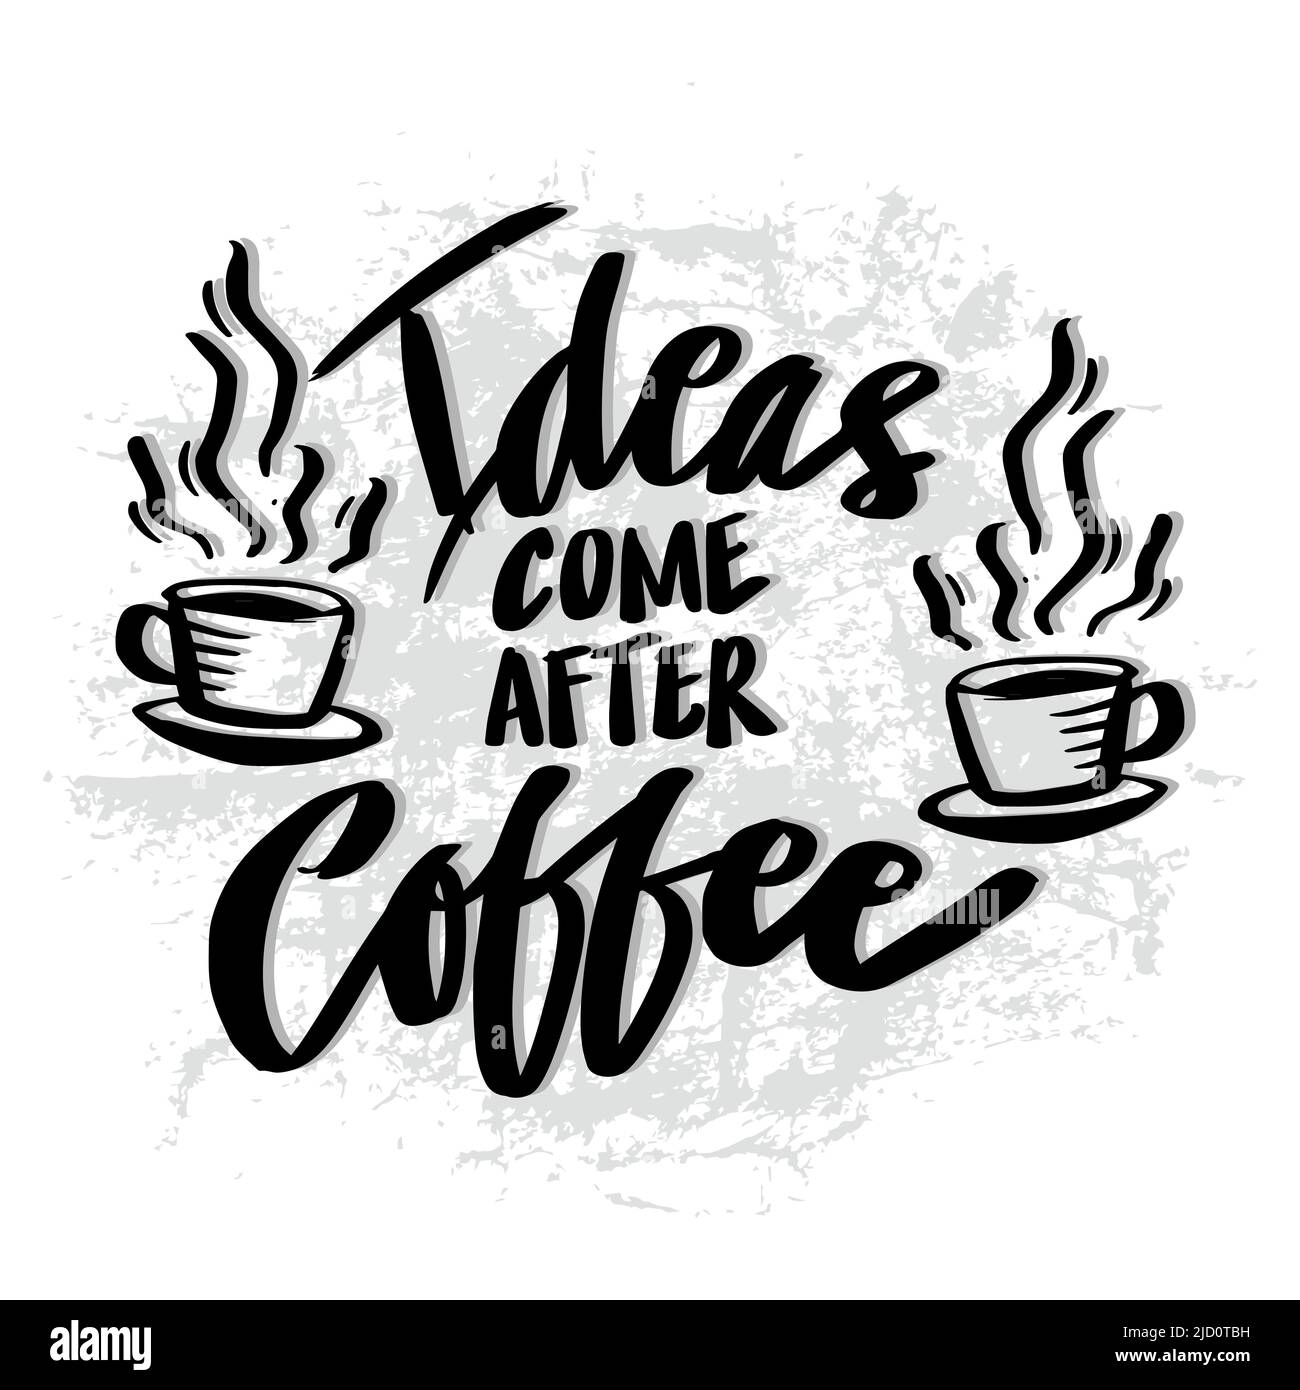 Le idee vengono dopo il caffè. Poster citazioni. Foto Stock